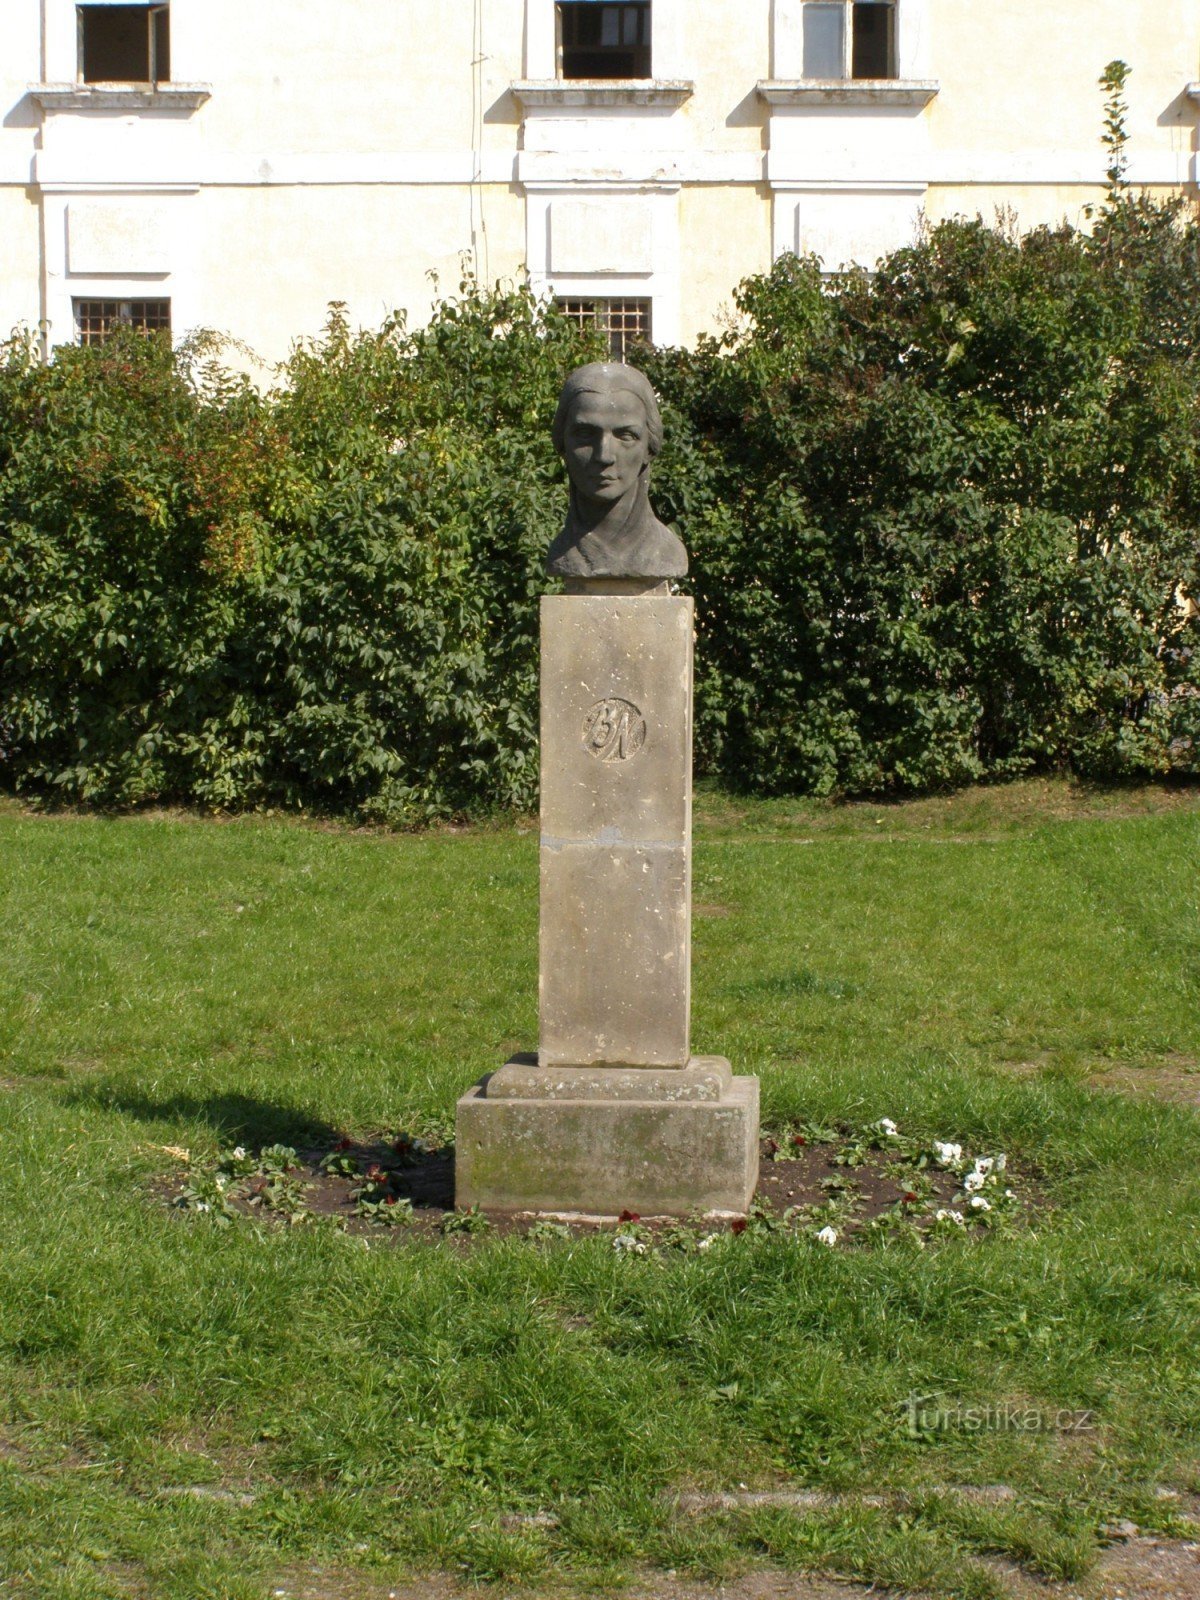 Josefov - Bozena Němcováの記念碑